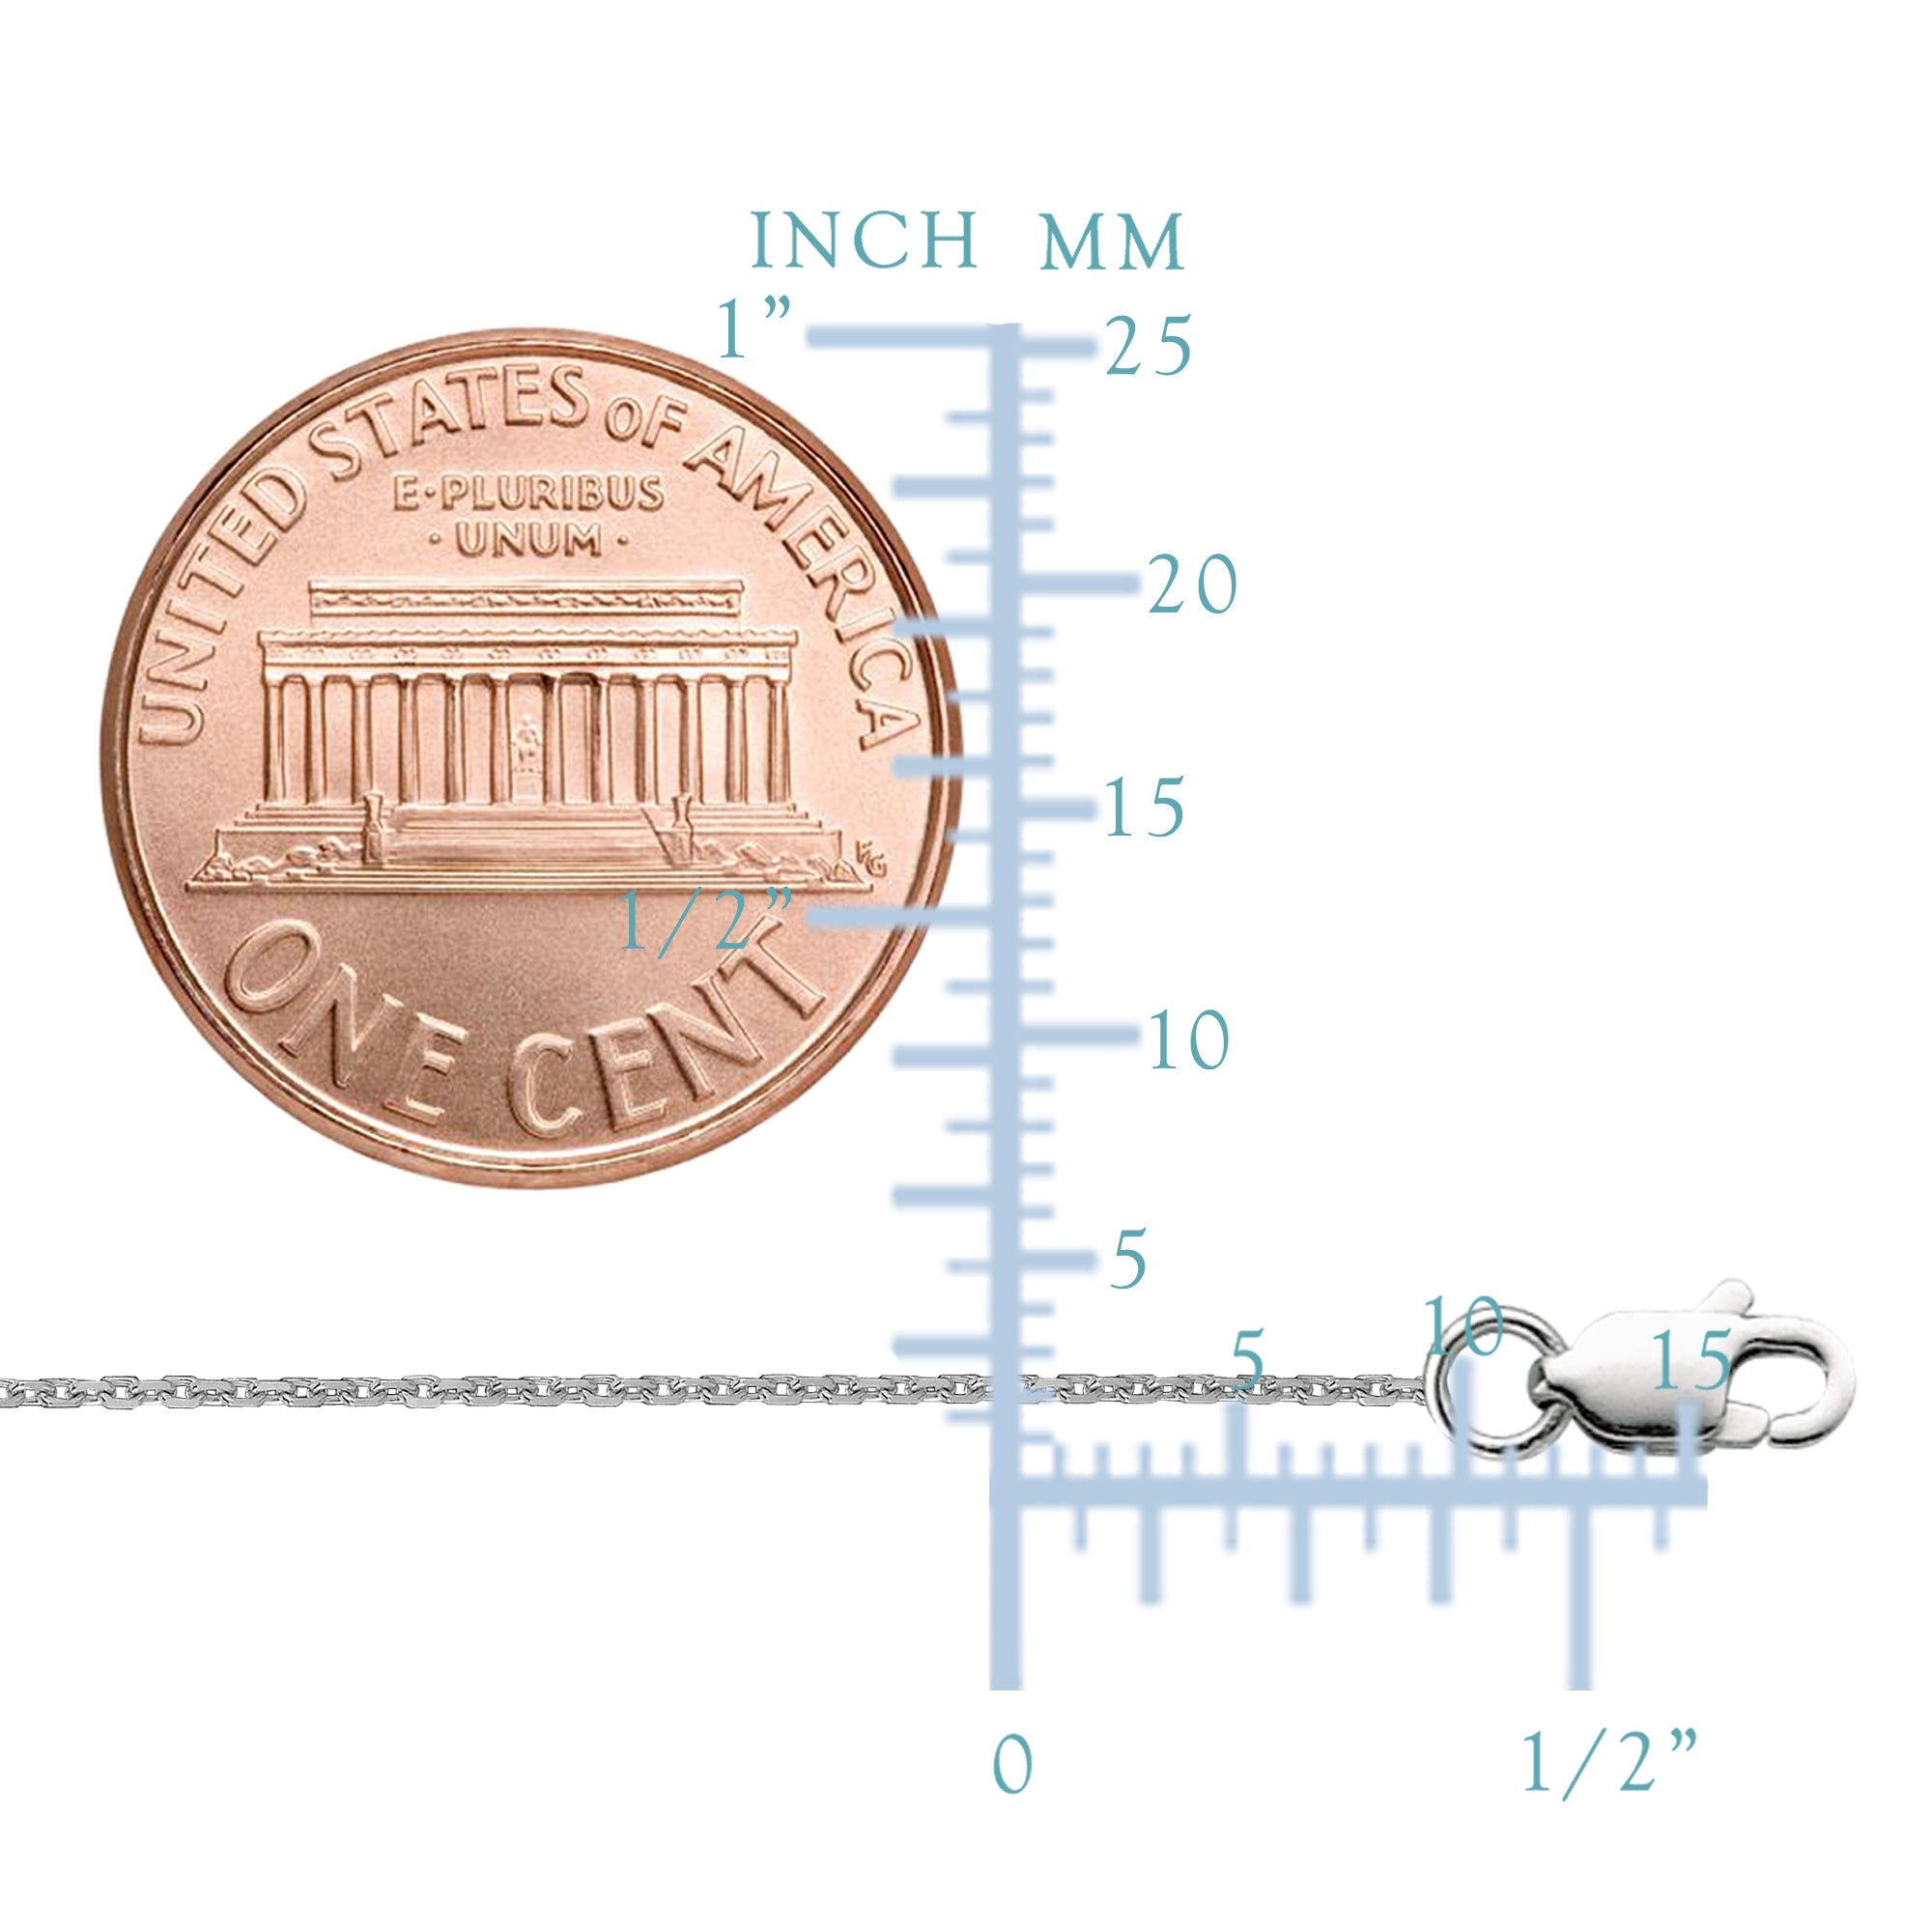 Sterlingsilver Rhodiumpläterat Cable Chain Halsband, 1,1 mm fina designersmycken för män och kvinnor